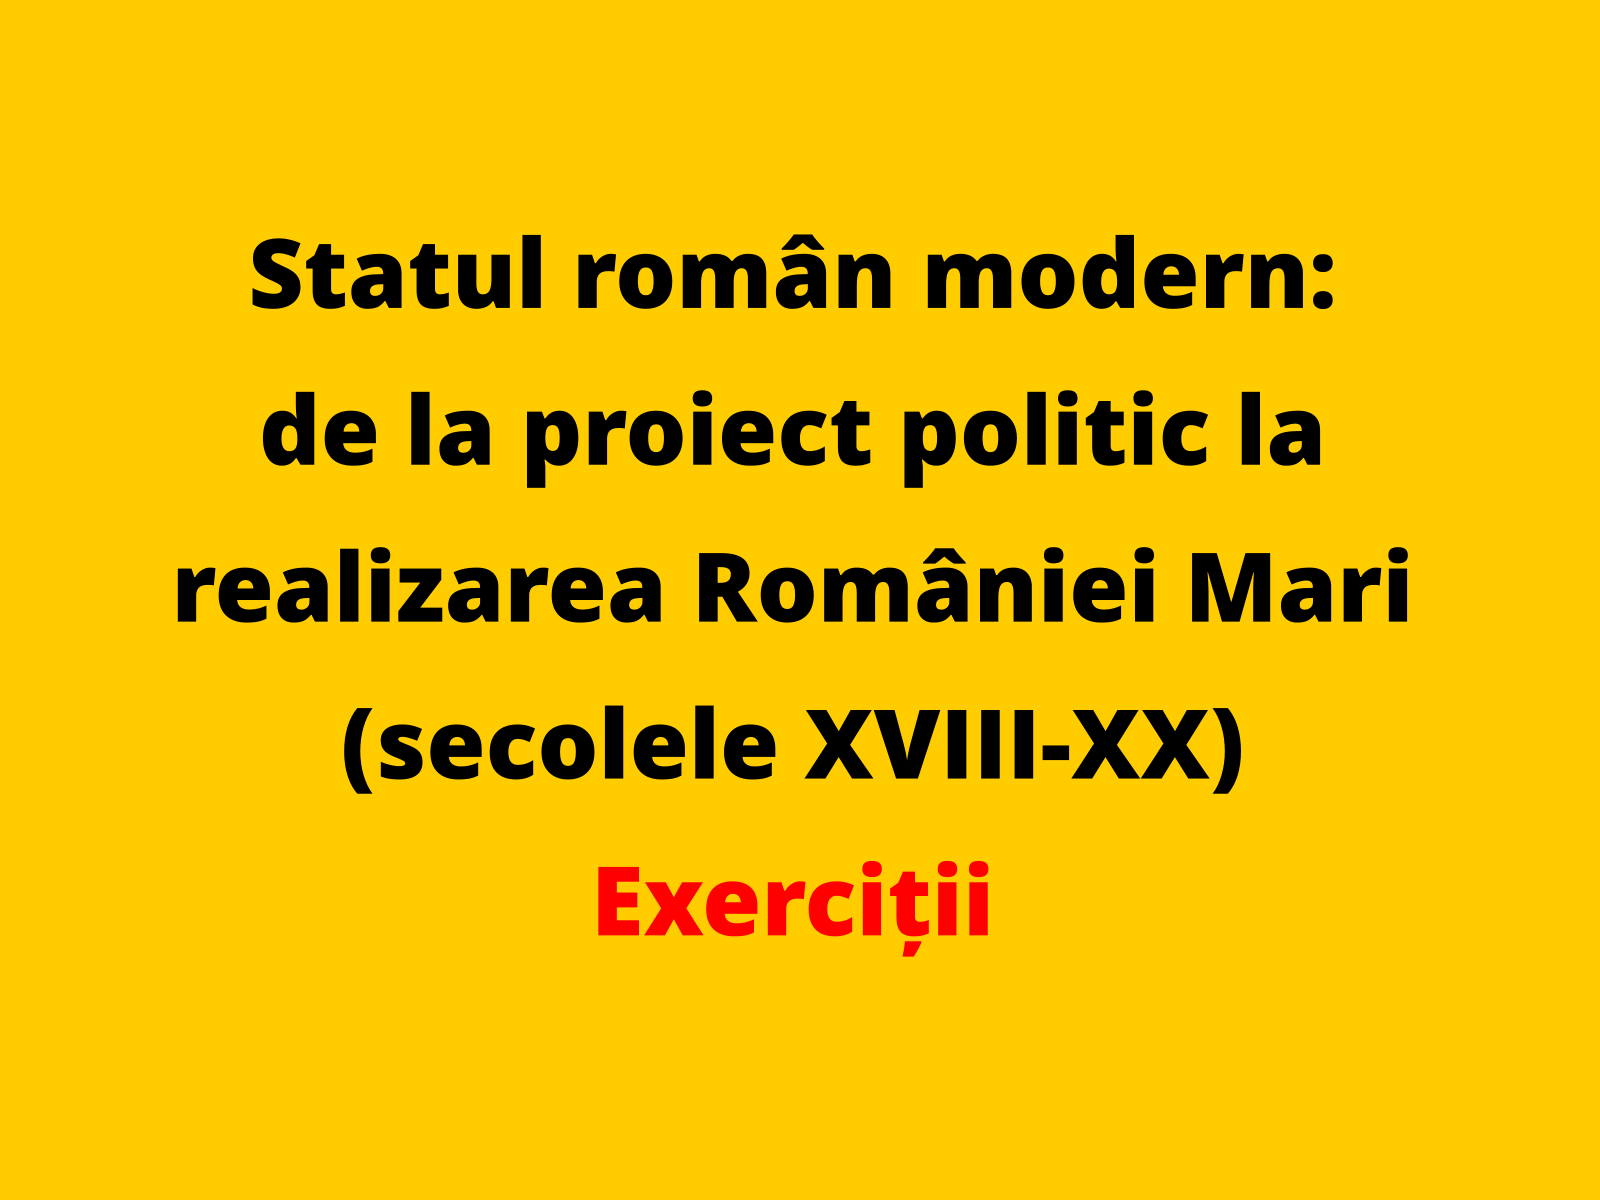 Argumentați, printr-un fapt istoric relevant, afirmația conform căreia consolidarea statului român modern s-a realizat în a doua jumătate a secolului al XIX-lea și prin adoptarea unei constituții